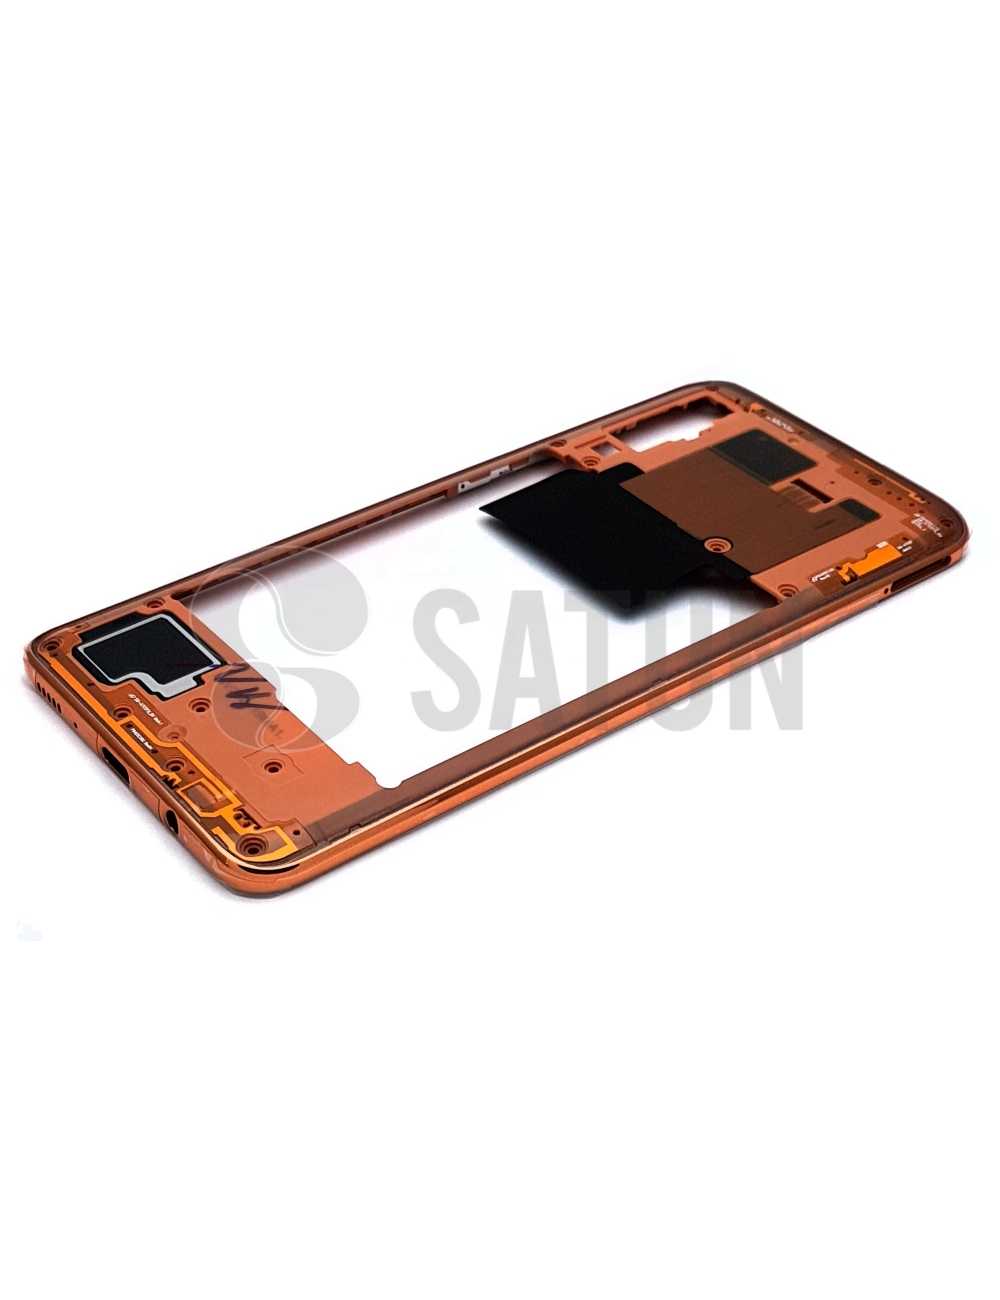 Carcasa intermedia Samsung Galaxy A70 naranja